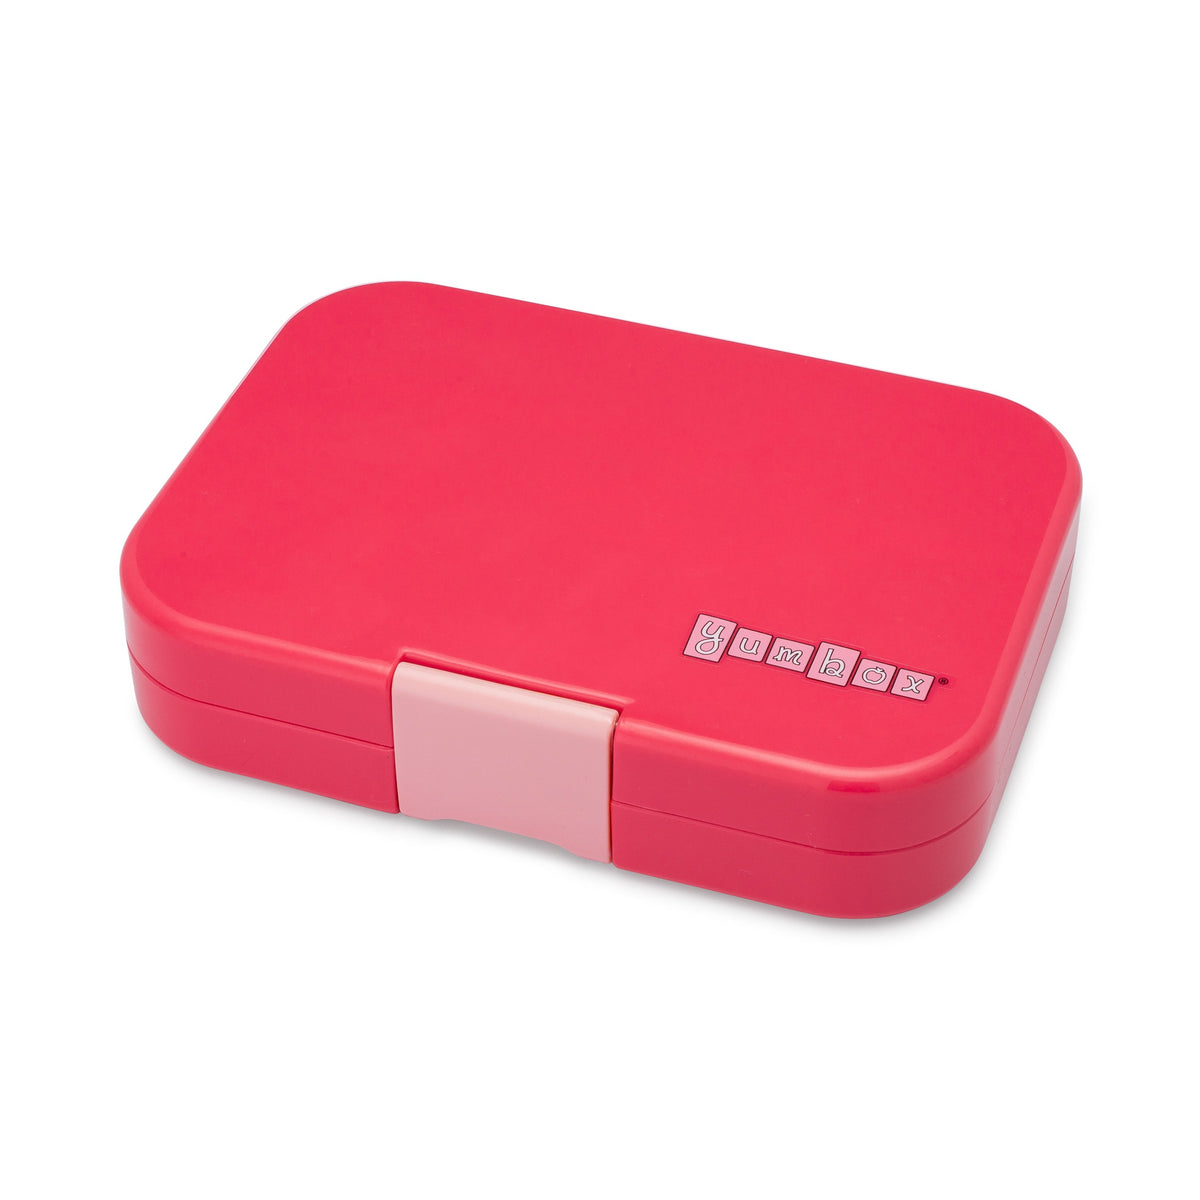 yumbox-panino-lotus-pink-4-compartment-lunch-box- (1)